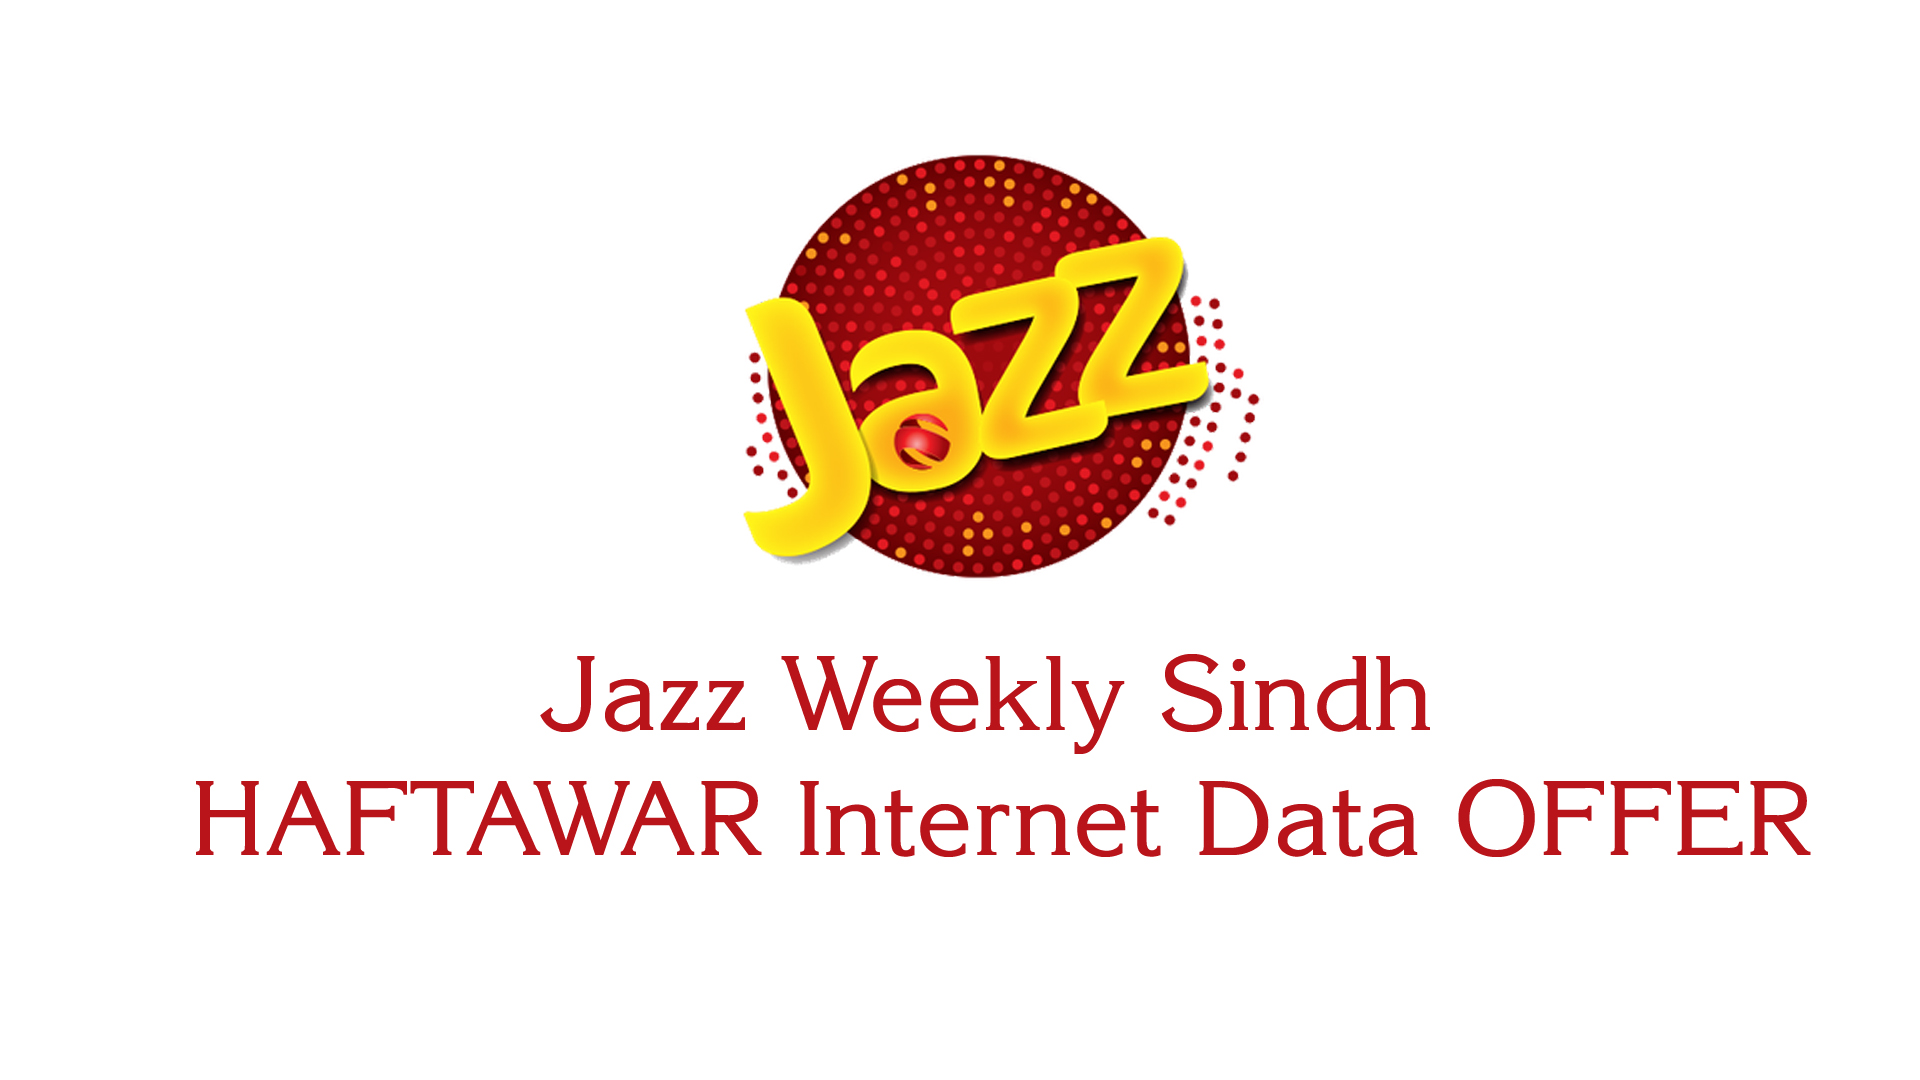 Jazz Weekly Sindh HAFTAWAR Internet Data OFFER